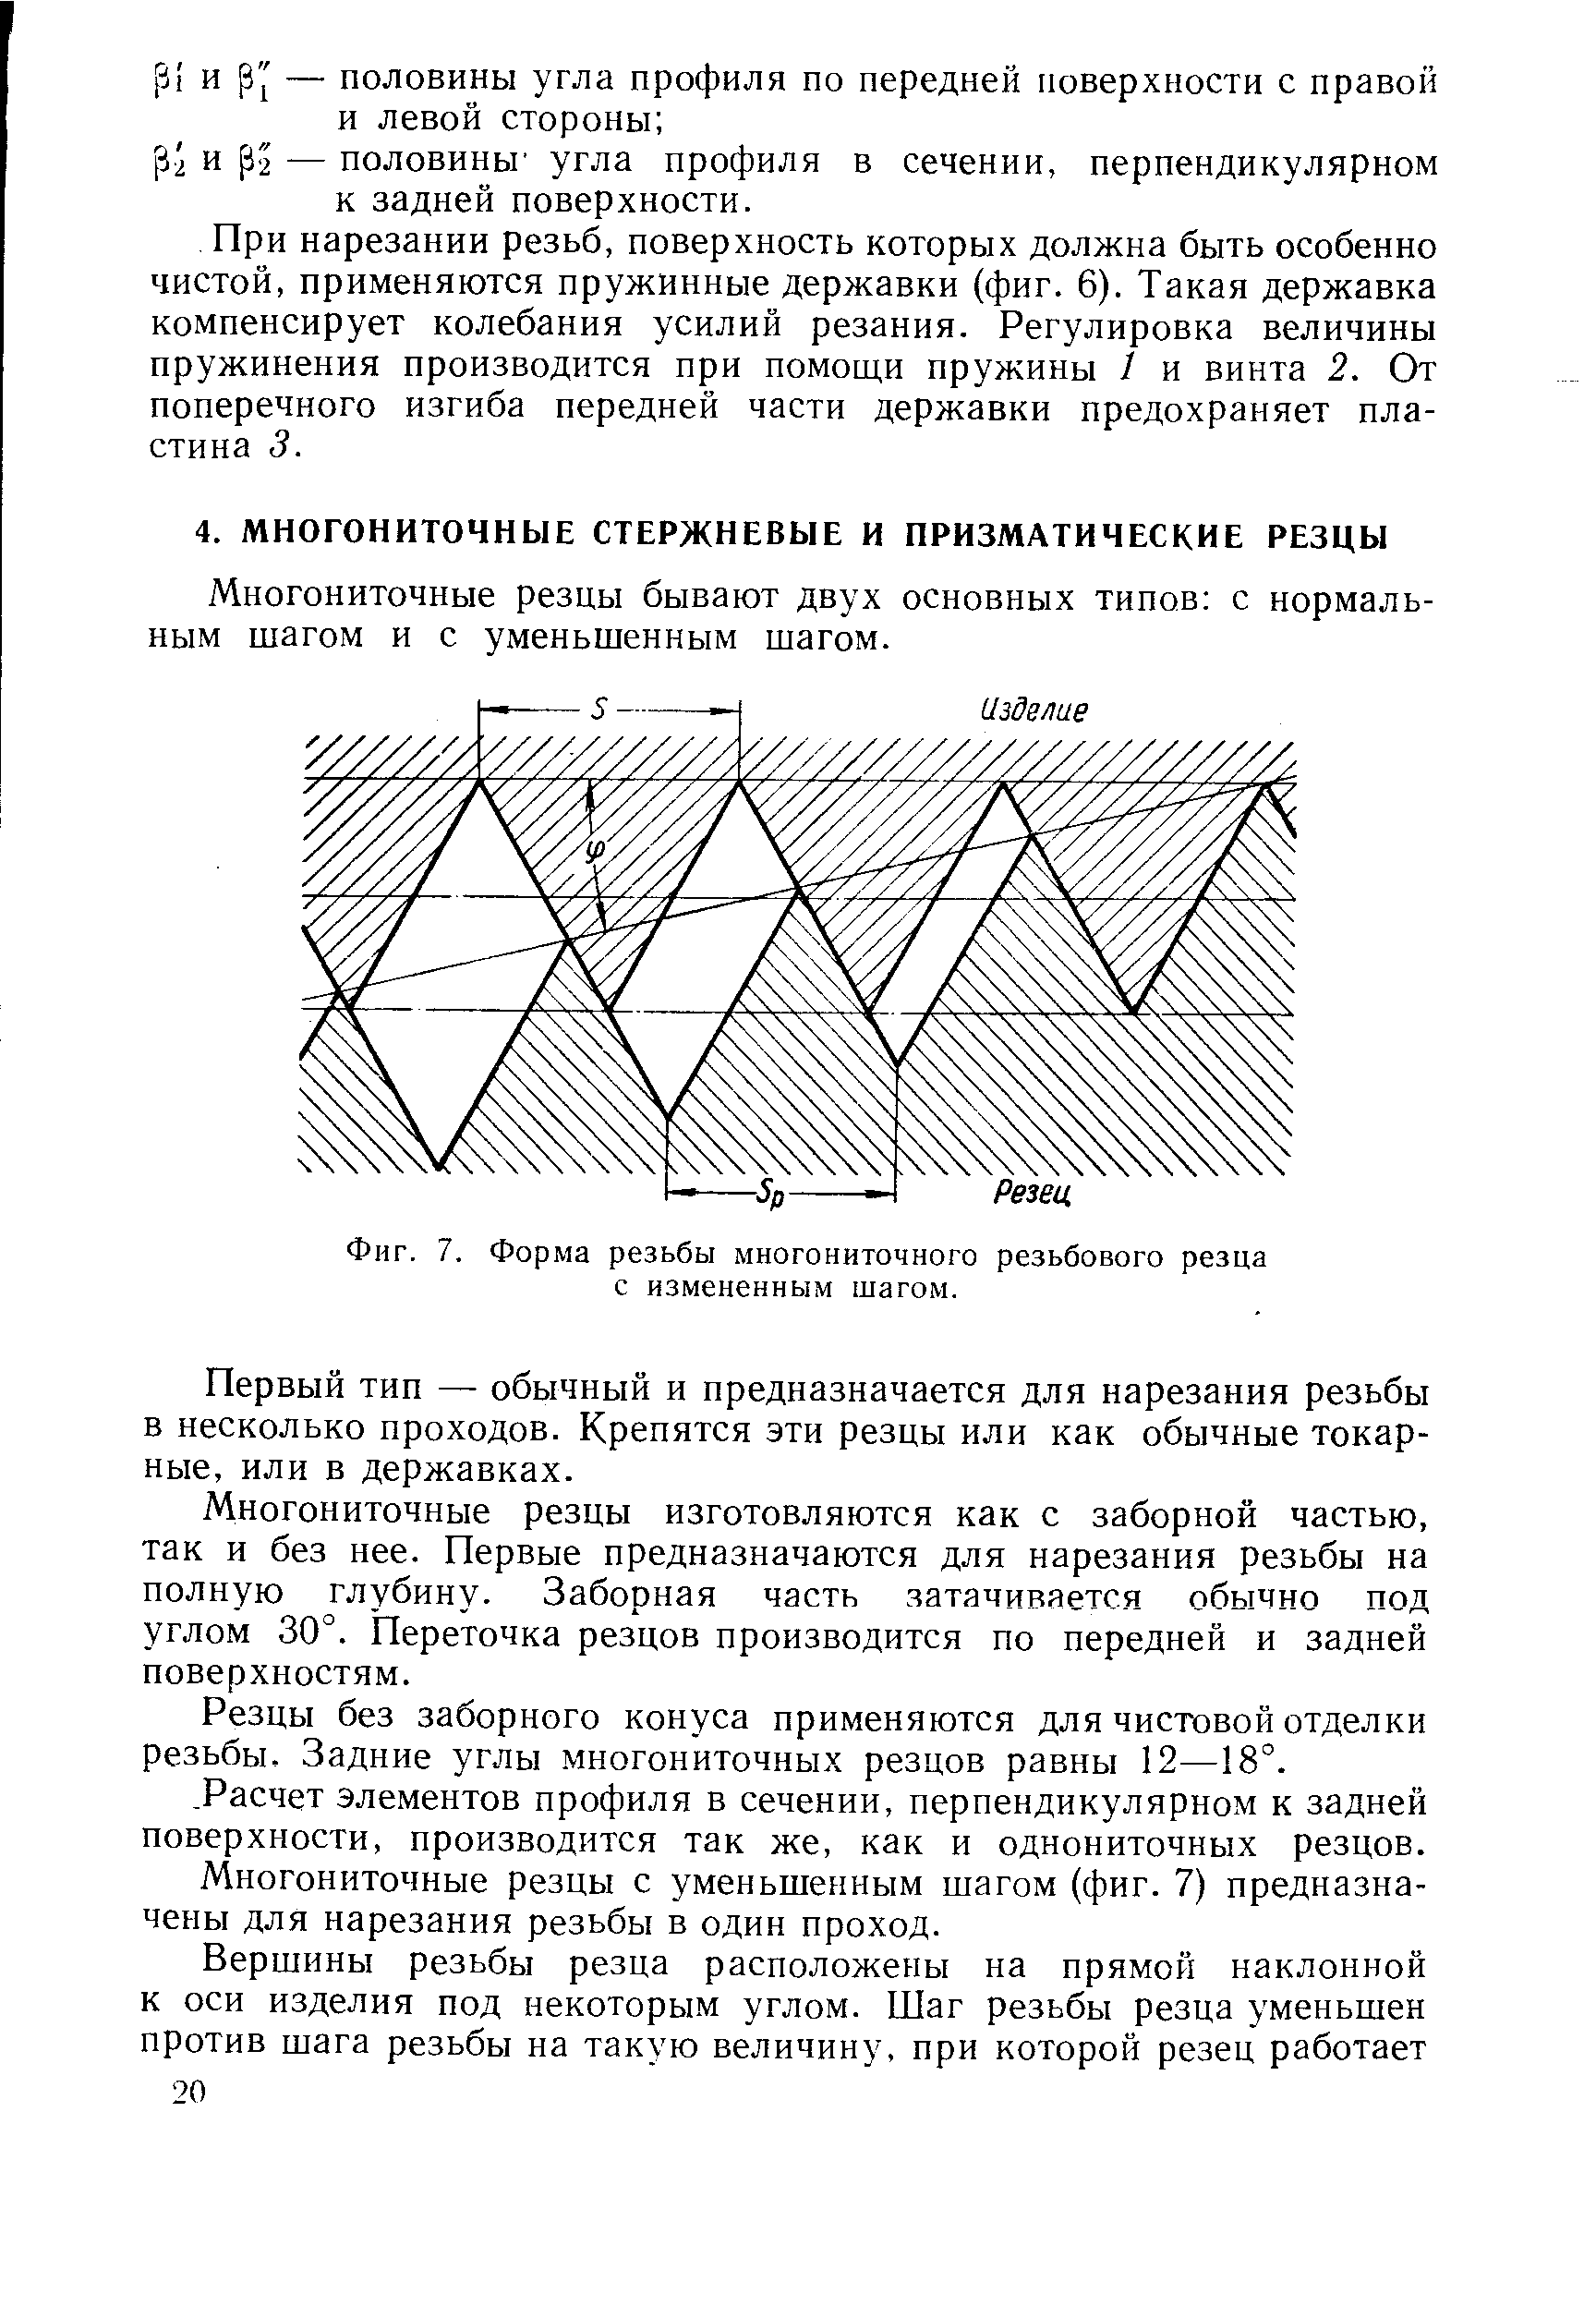 Фиг. 7. Форма резьбы многониточного резьбового резца с измененным шагом.
